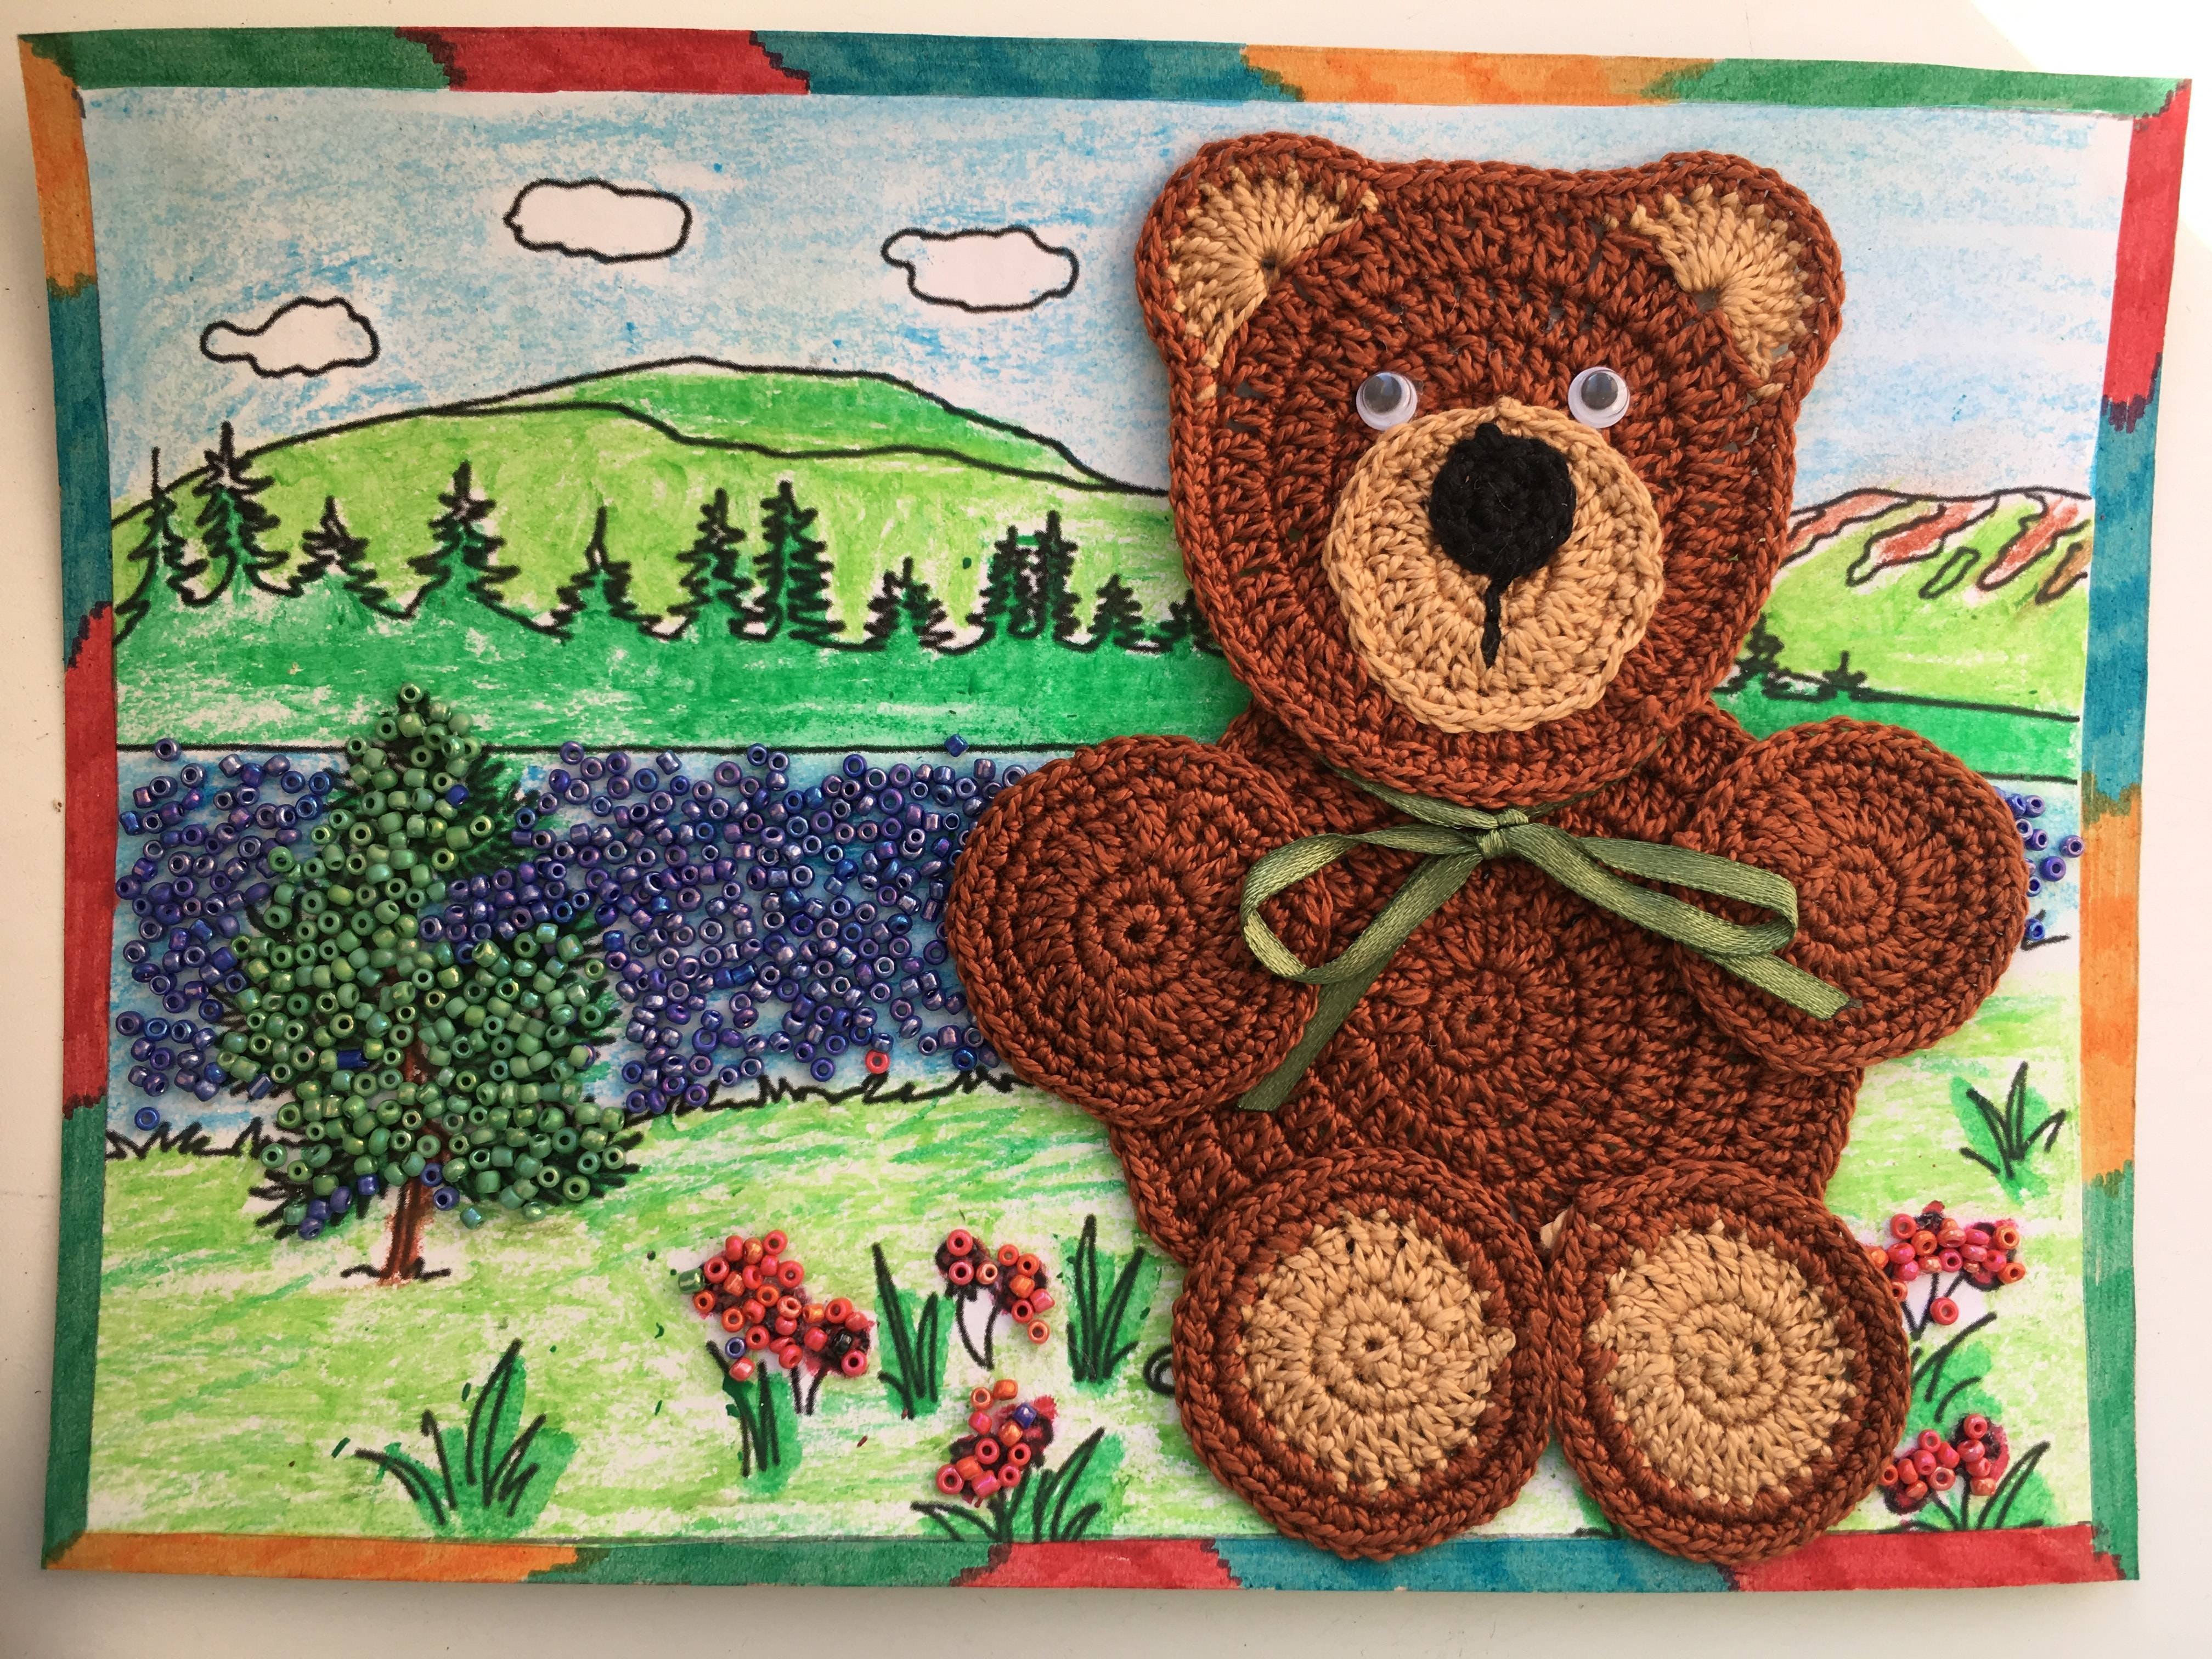 Поделка медведь своими руками — фото идеи, мастер-класс из бумаги, пластилина, природных материалов